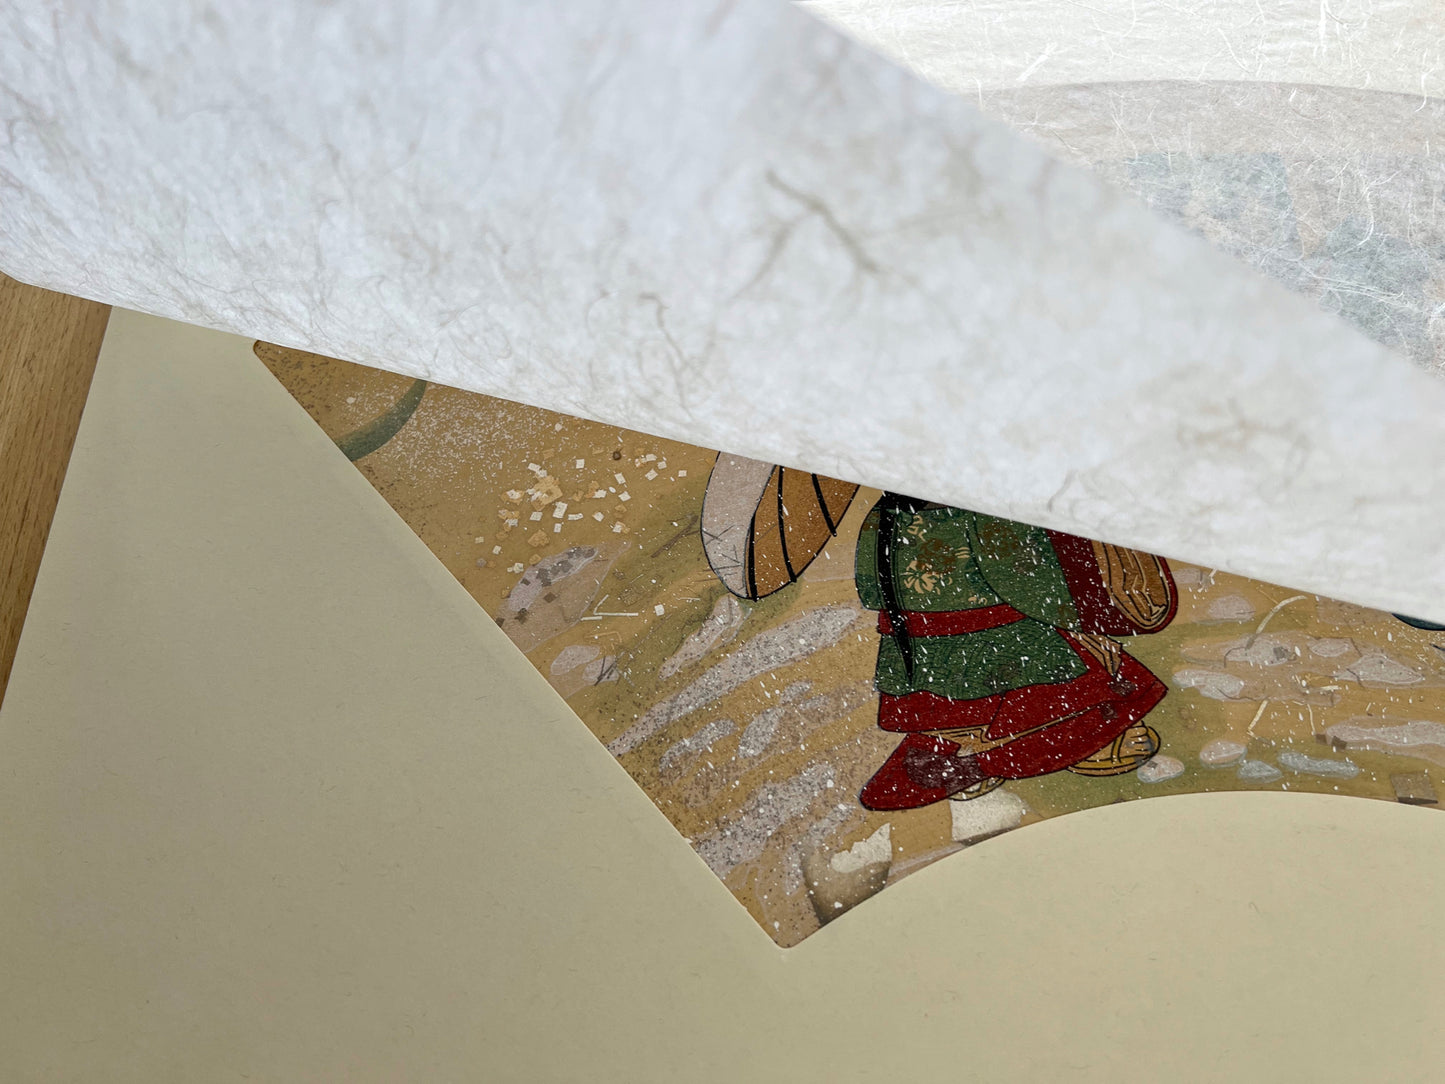 Estampe japonaise en forme d'éventail parsemée de fragments d'or et d'argent, matin neigeux, papier de protection, coin inférieur gauche.